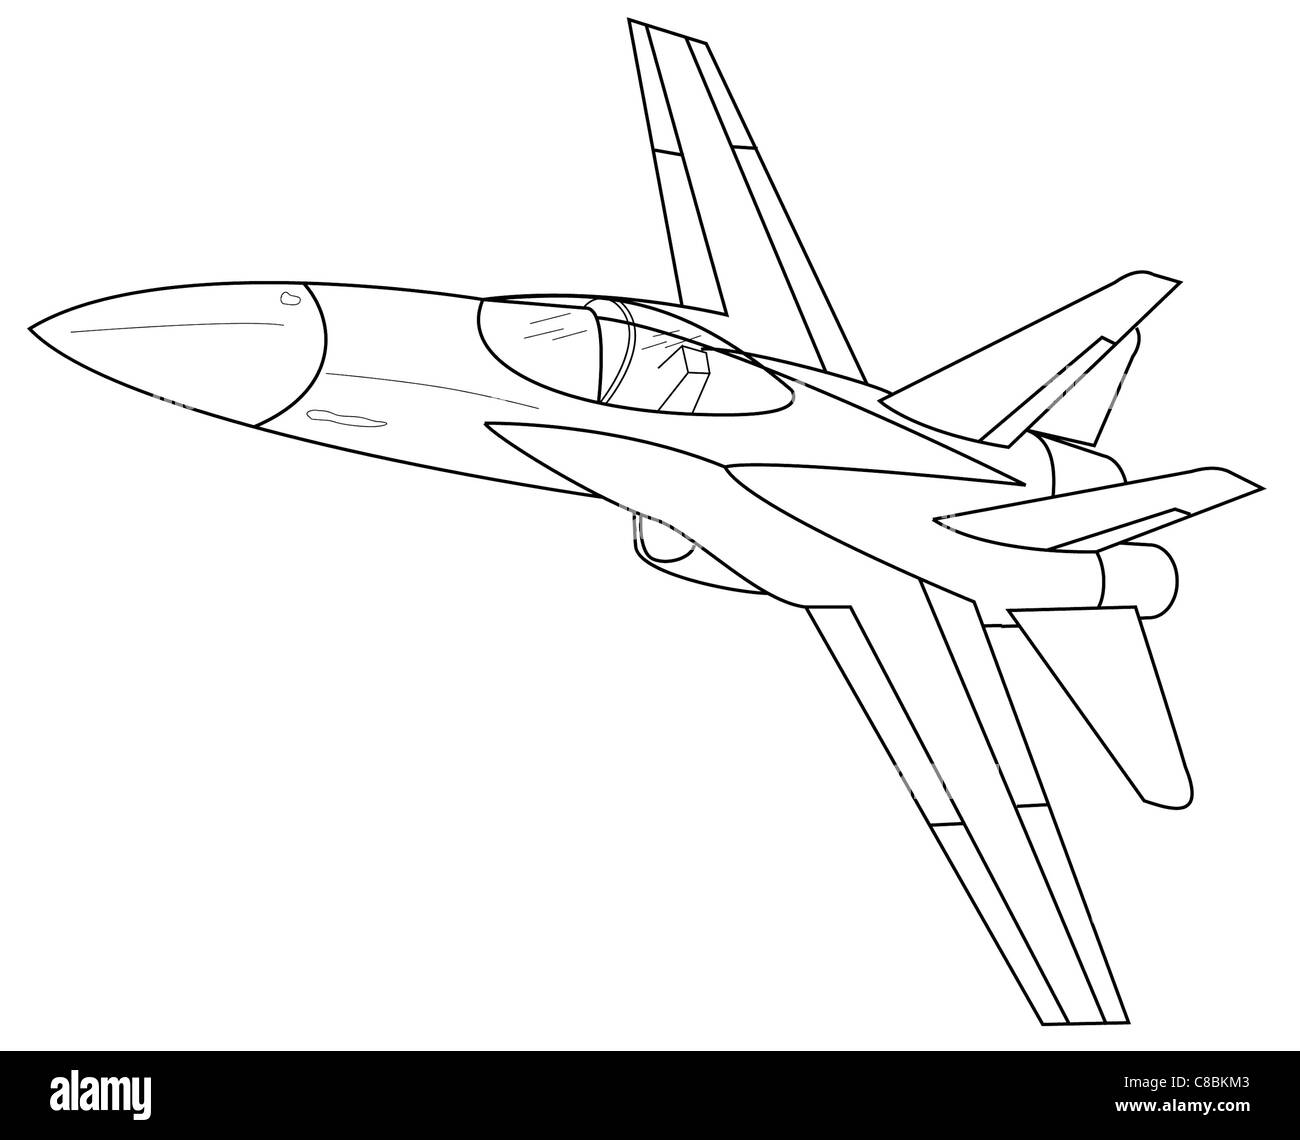 3 Visualizzare la linea di aeromobili arte disegno F-18 Hornet Foto Stock